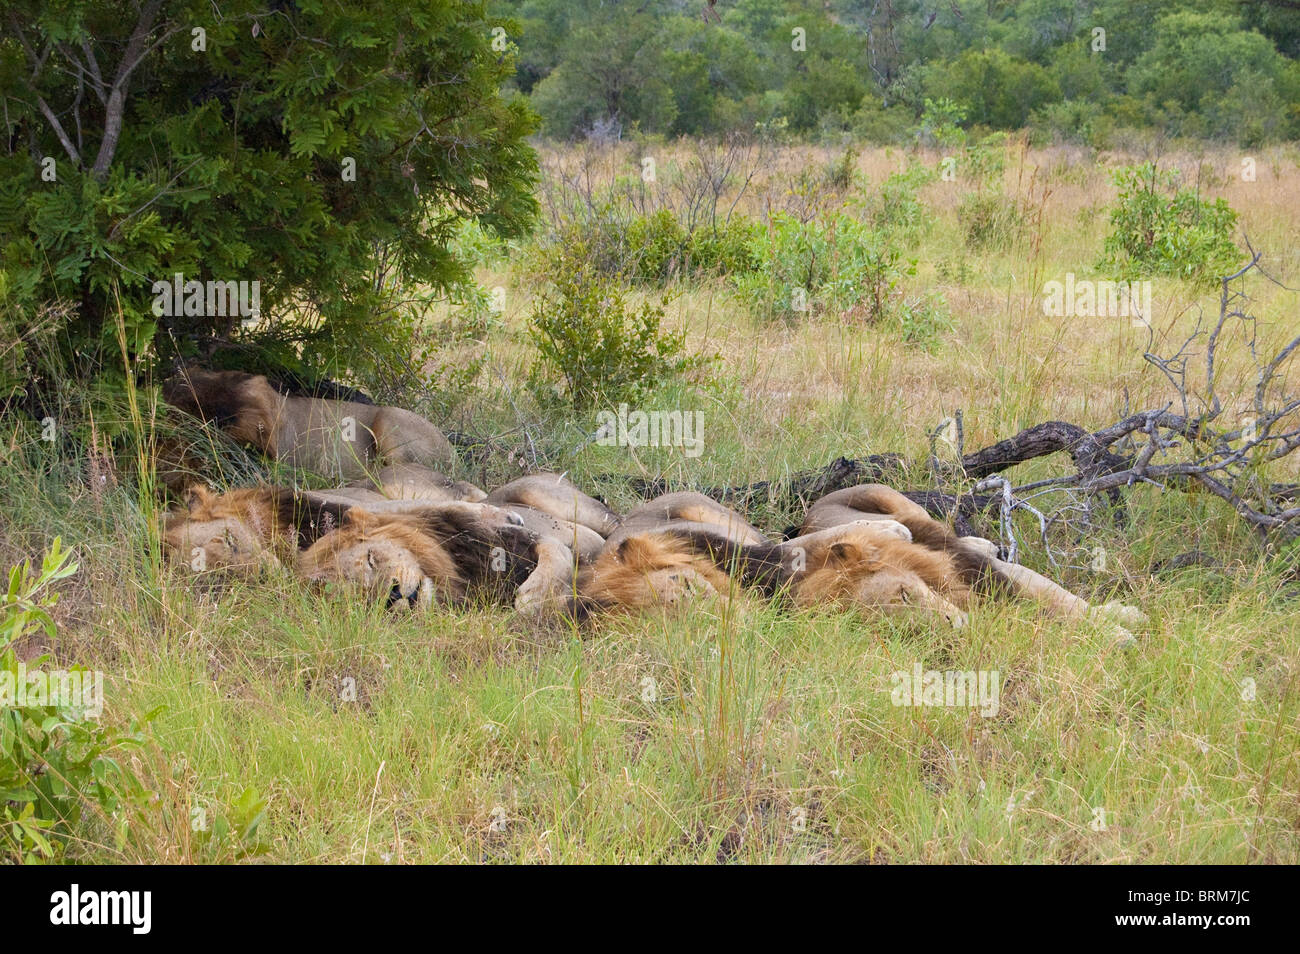 5 Maschi Lions dormire insieme all'ombra di una piccola bussola Foto Stock